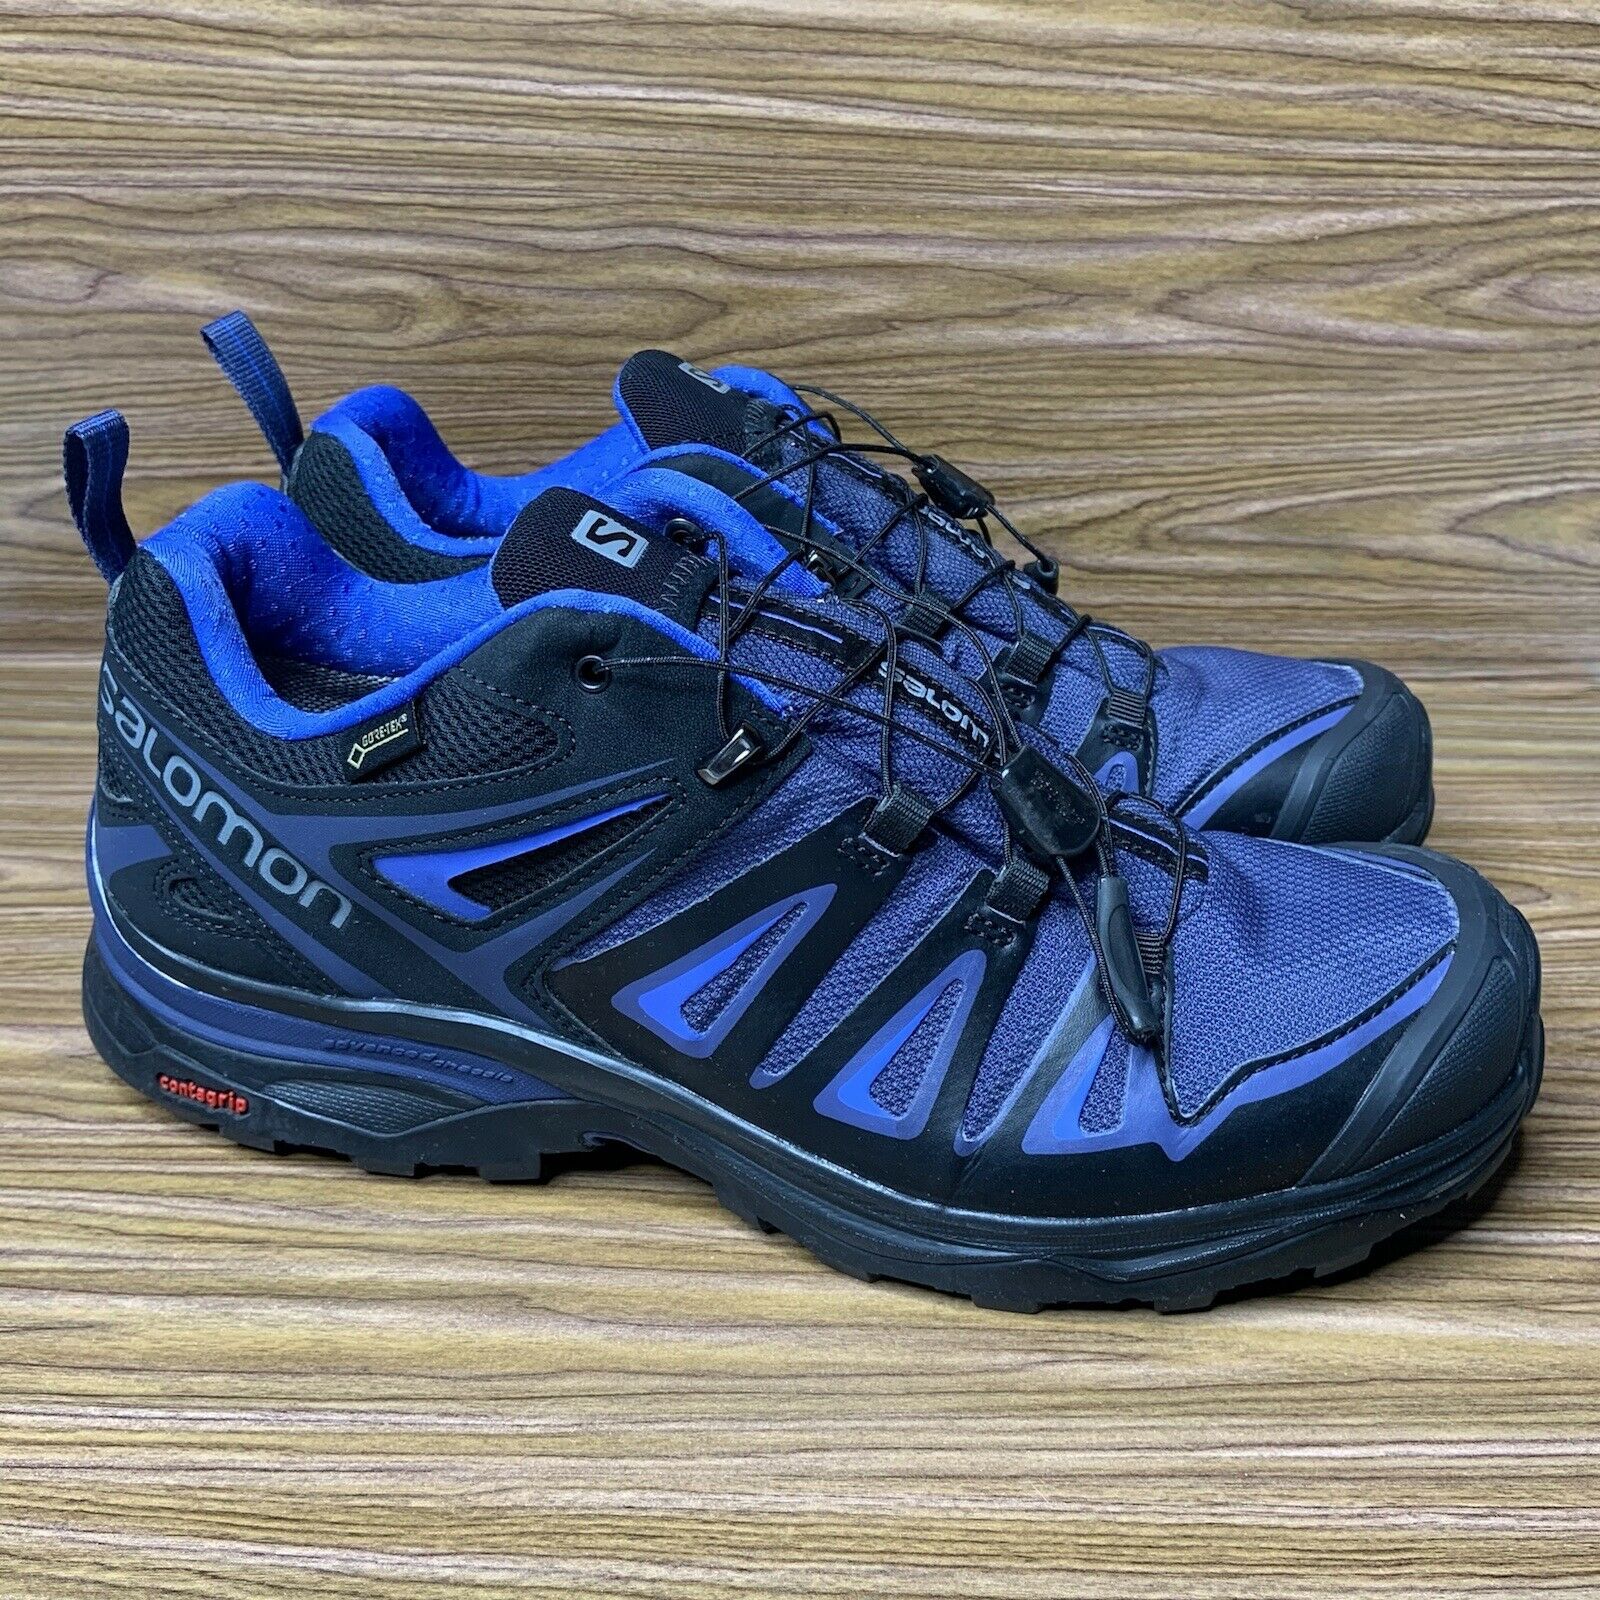 Womens Sz 11 Salomon X Ultra 3 Hiking Shoes Walking Climbing Contragrip Goretex